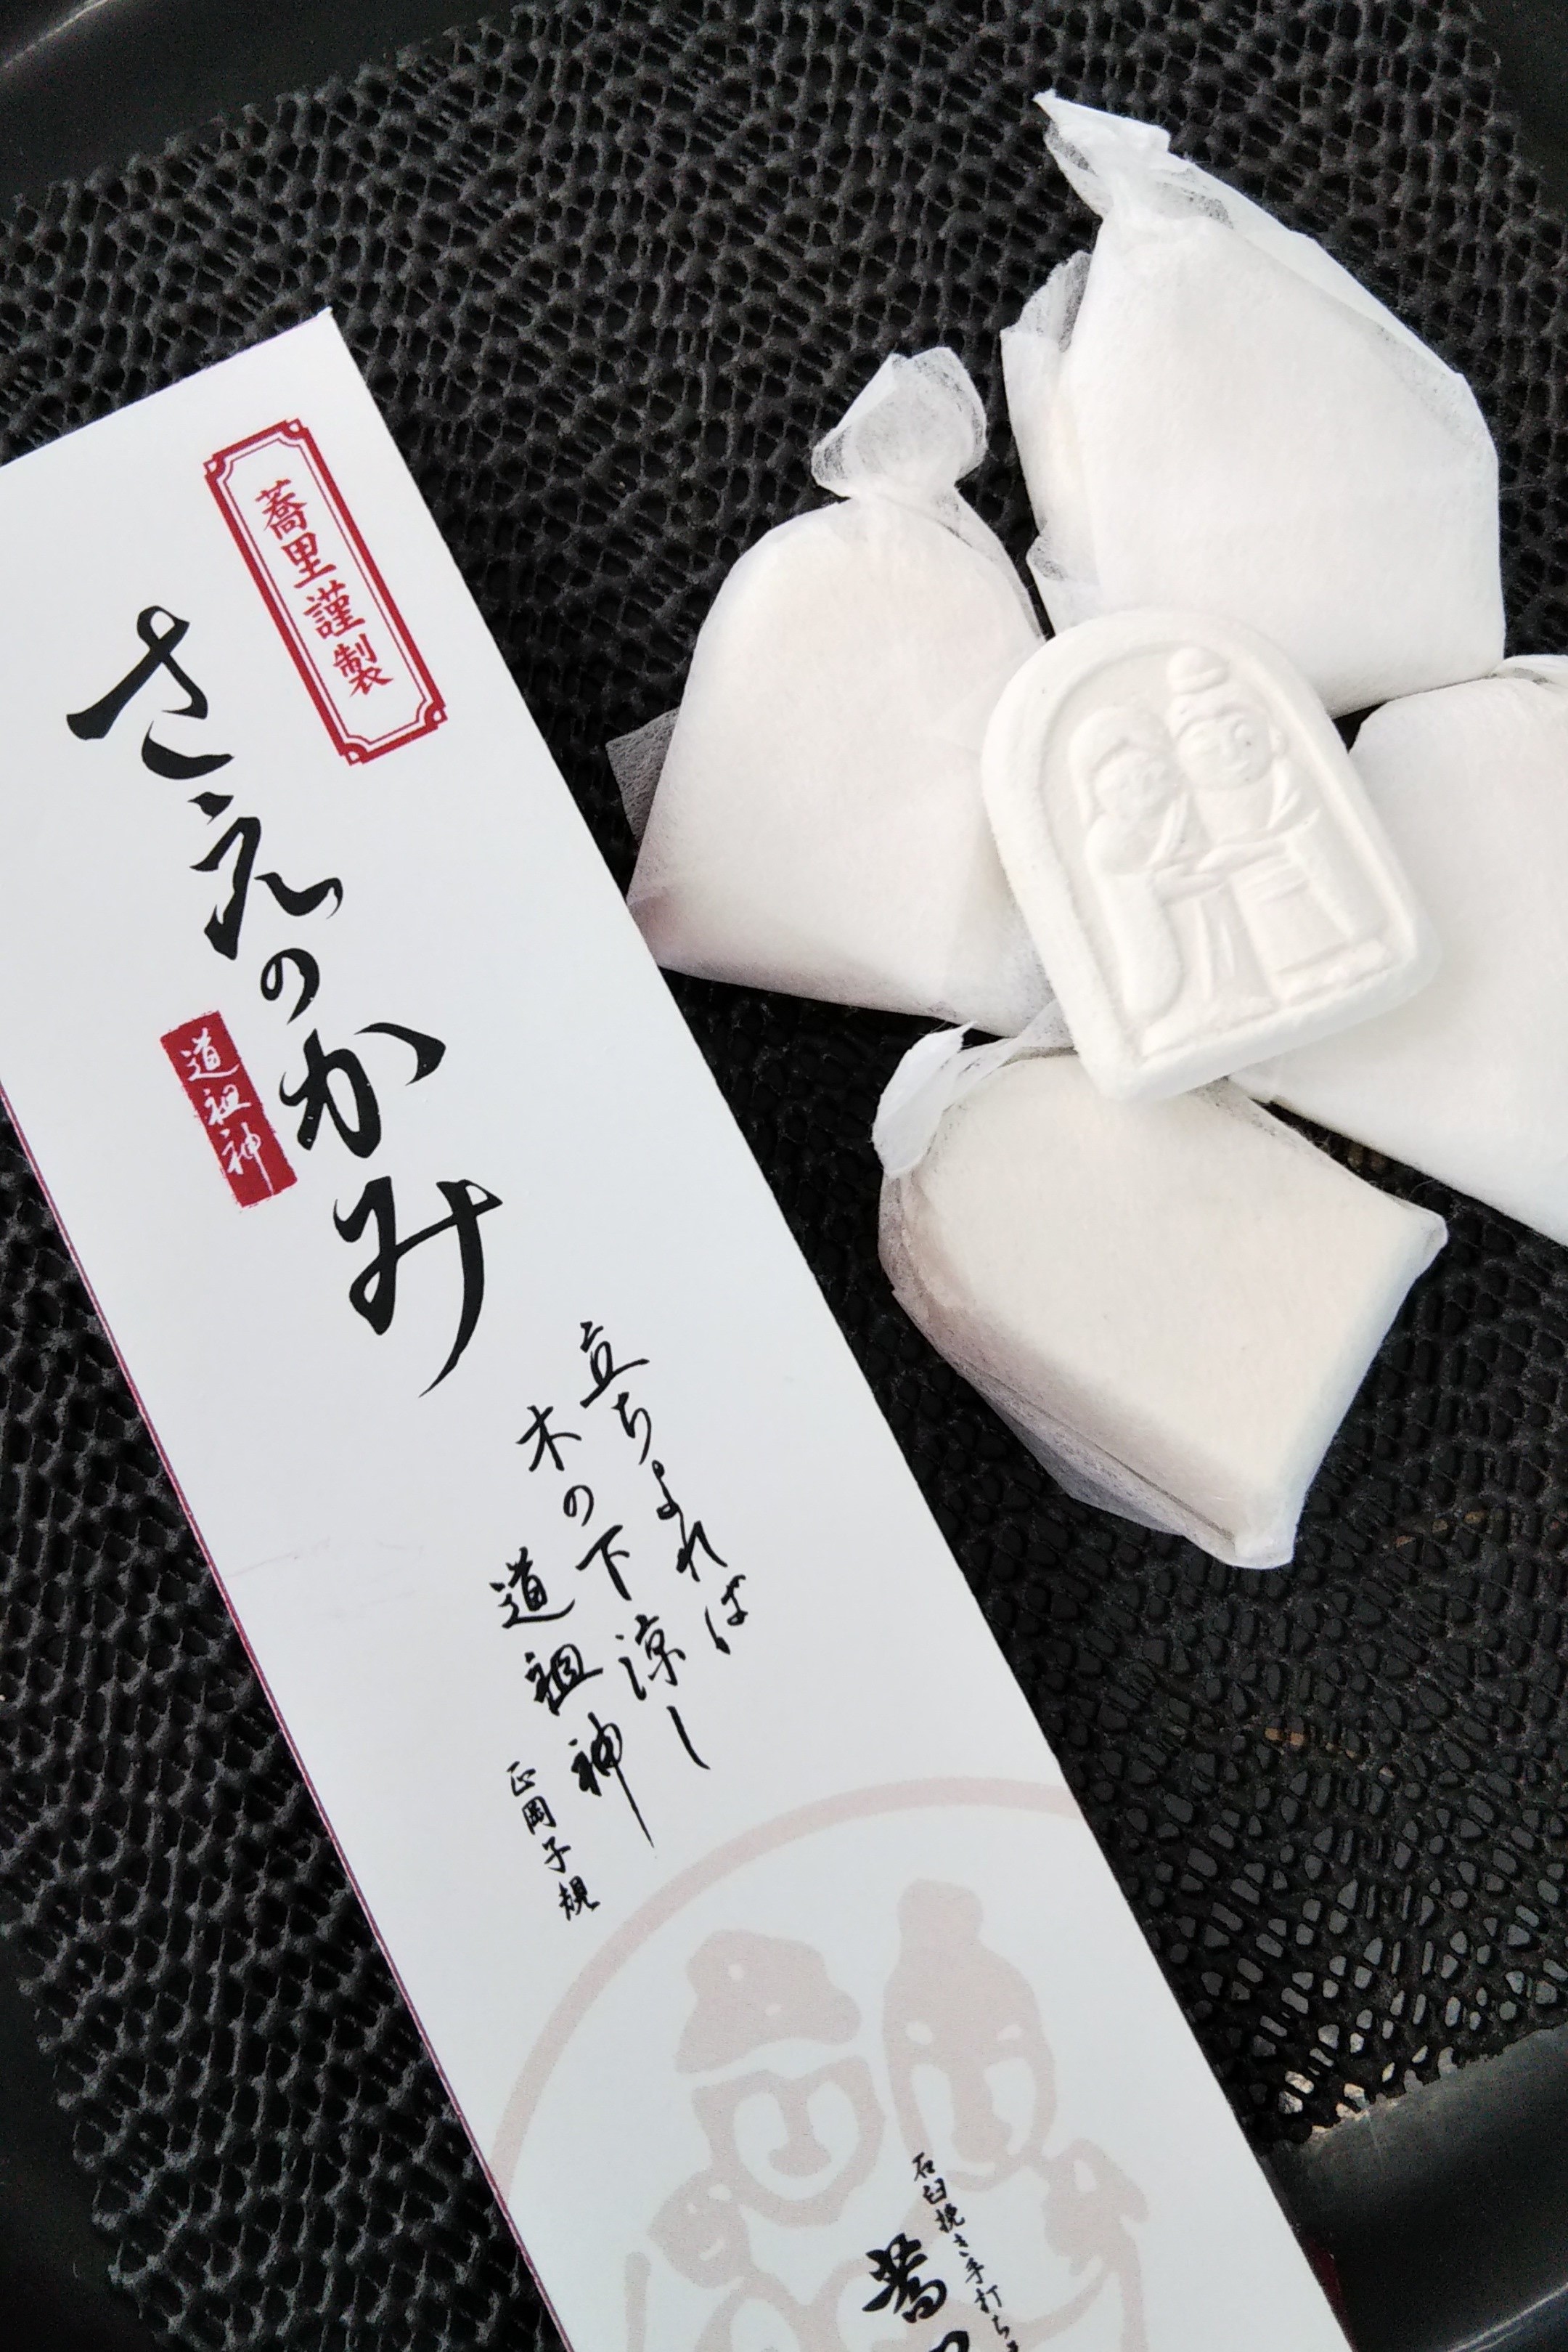 蕎里オリジナルお干菓子　「さえのかみ」は　疫病退散を願って創った和三盆のお菓子。蕎里の守護神である道祖神をモチーフにしました。